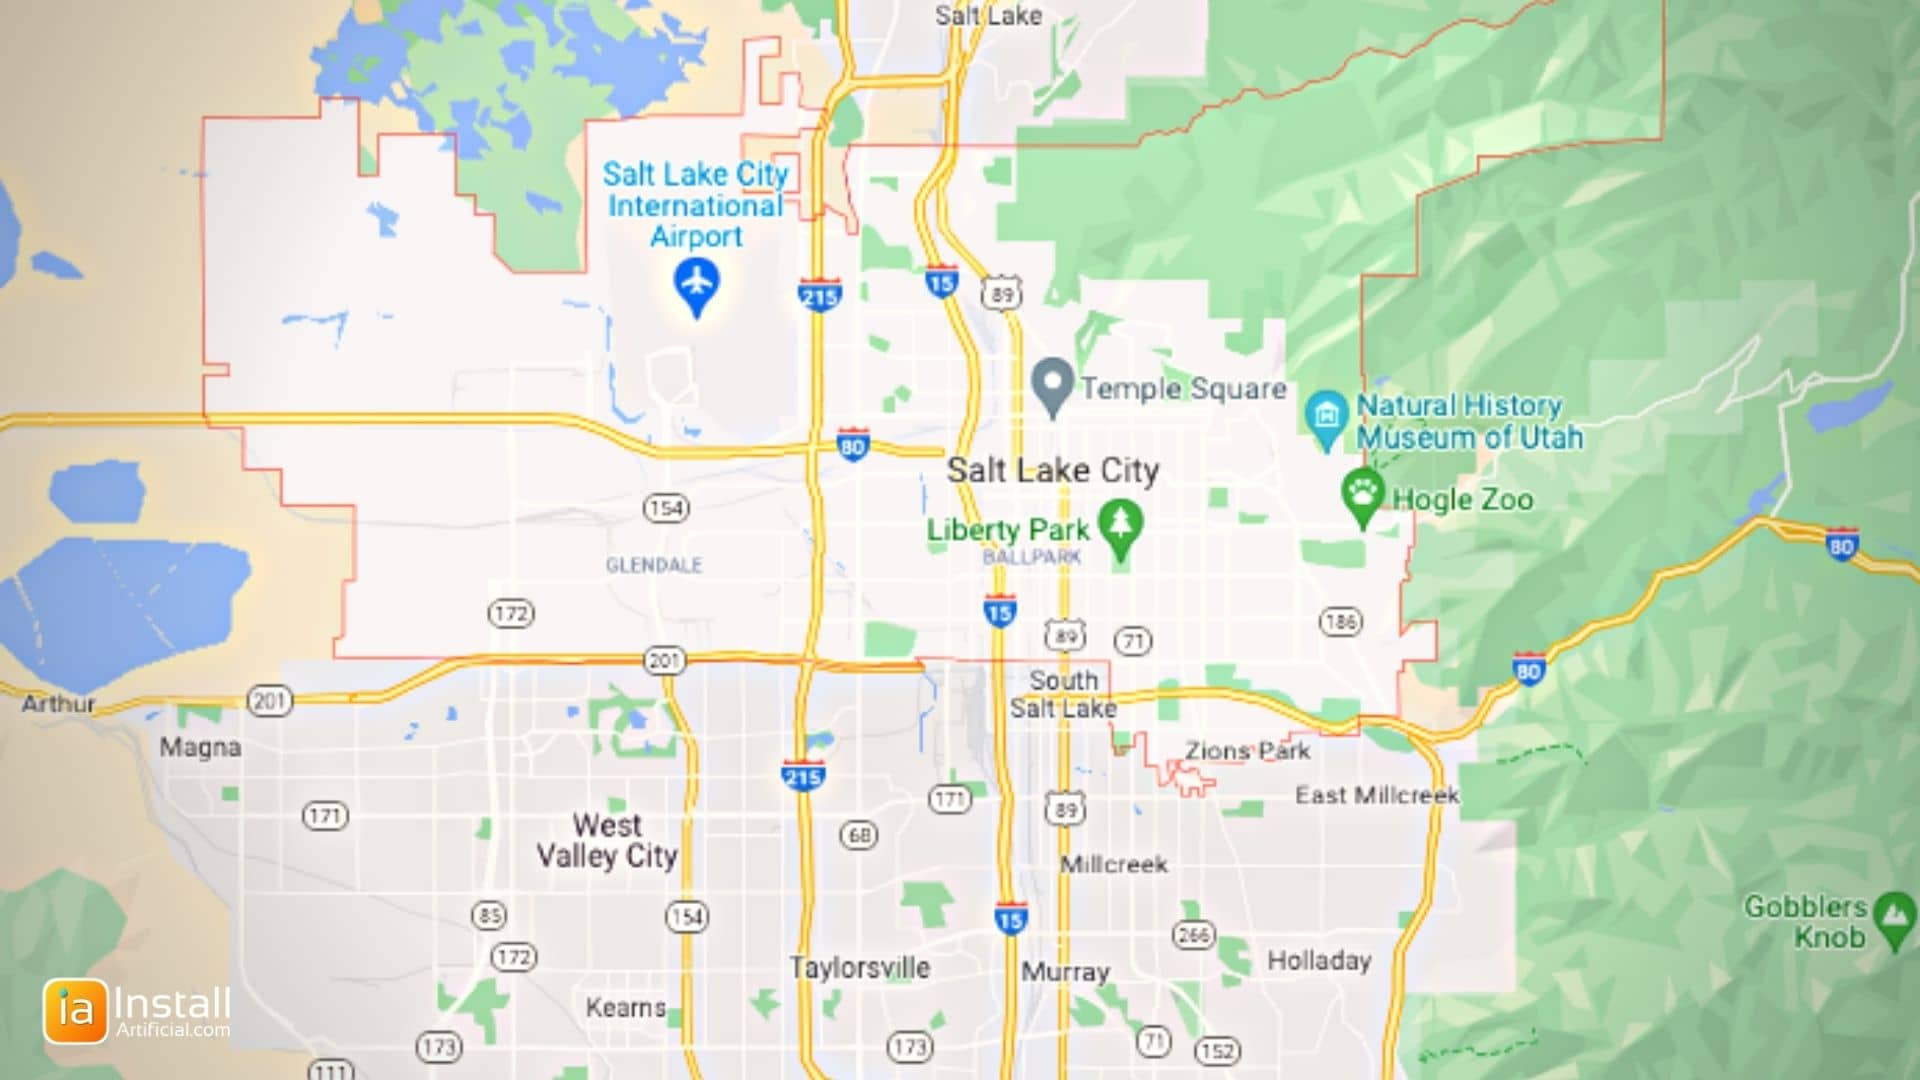 InstallArtificial Location Map - Salt Lake City Utah